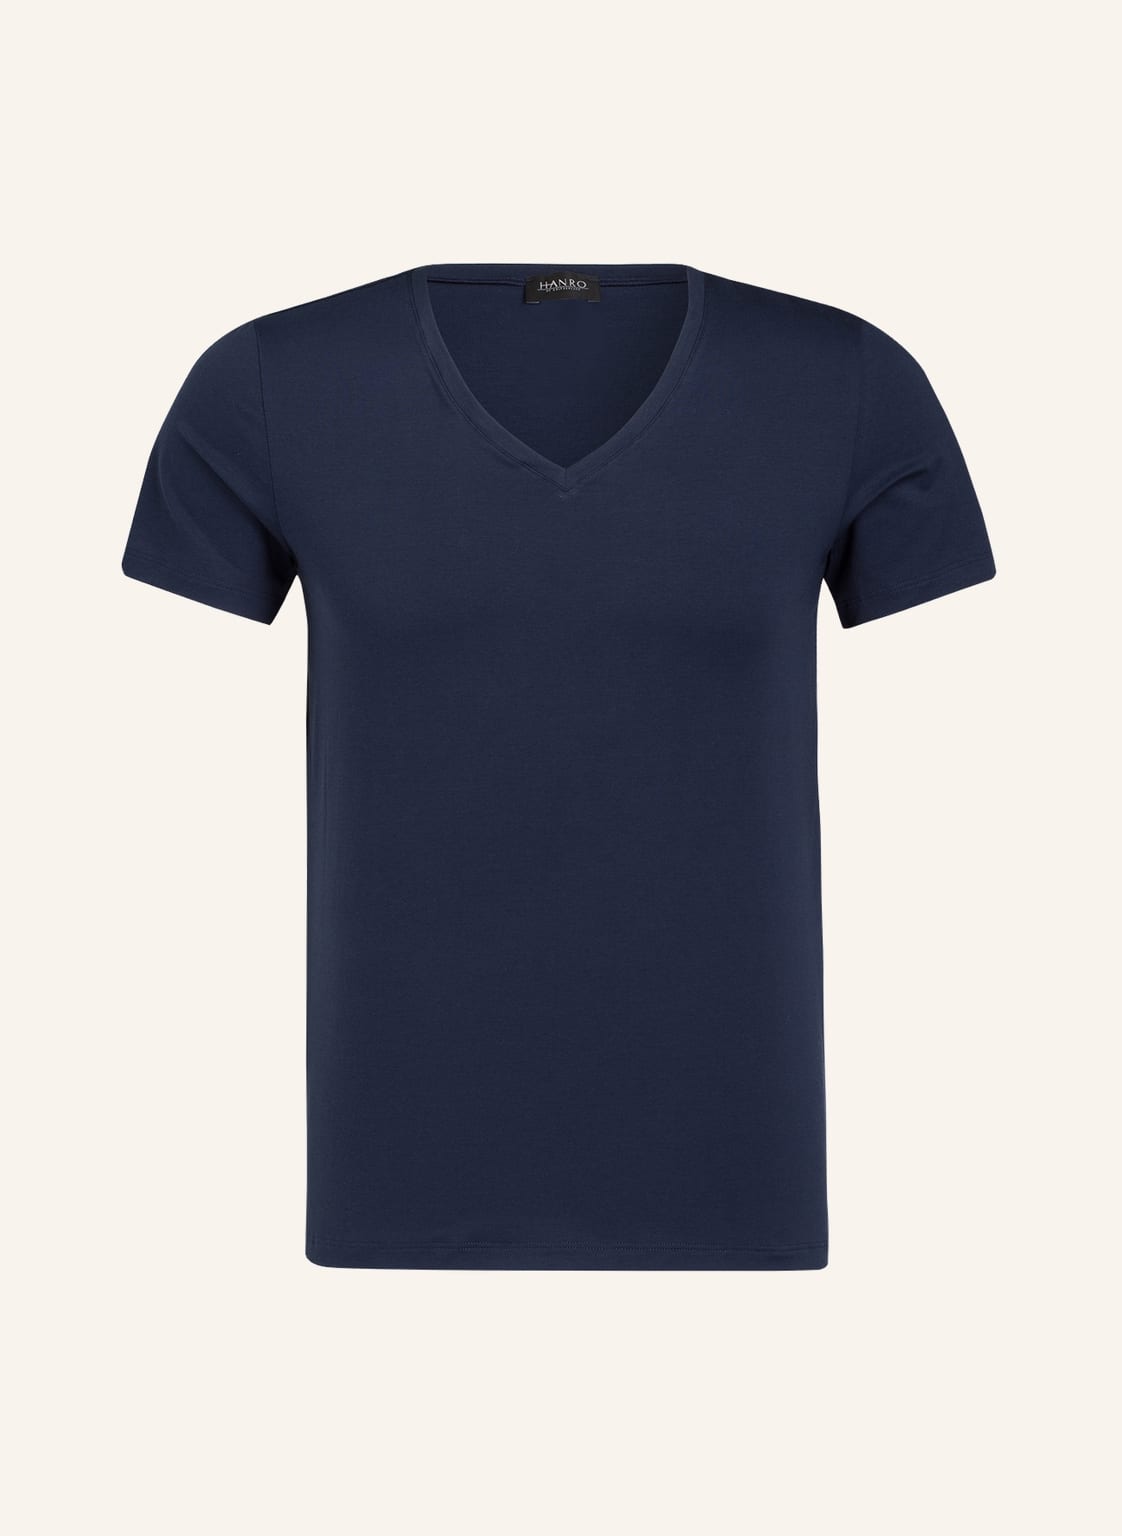 Hanro V-Shirt Cotton Superior blau von Hanro